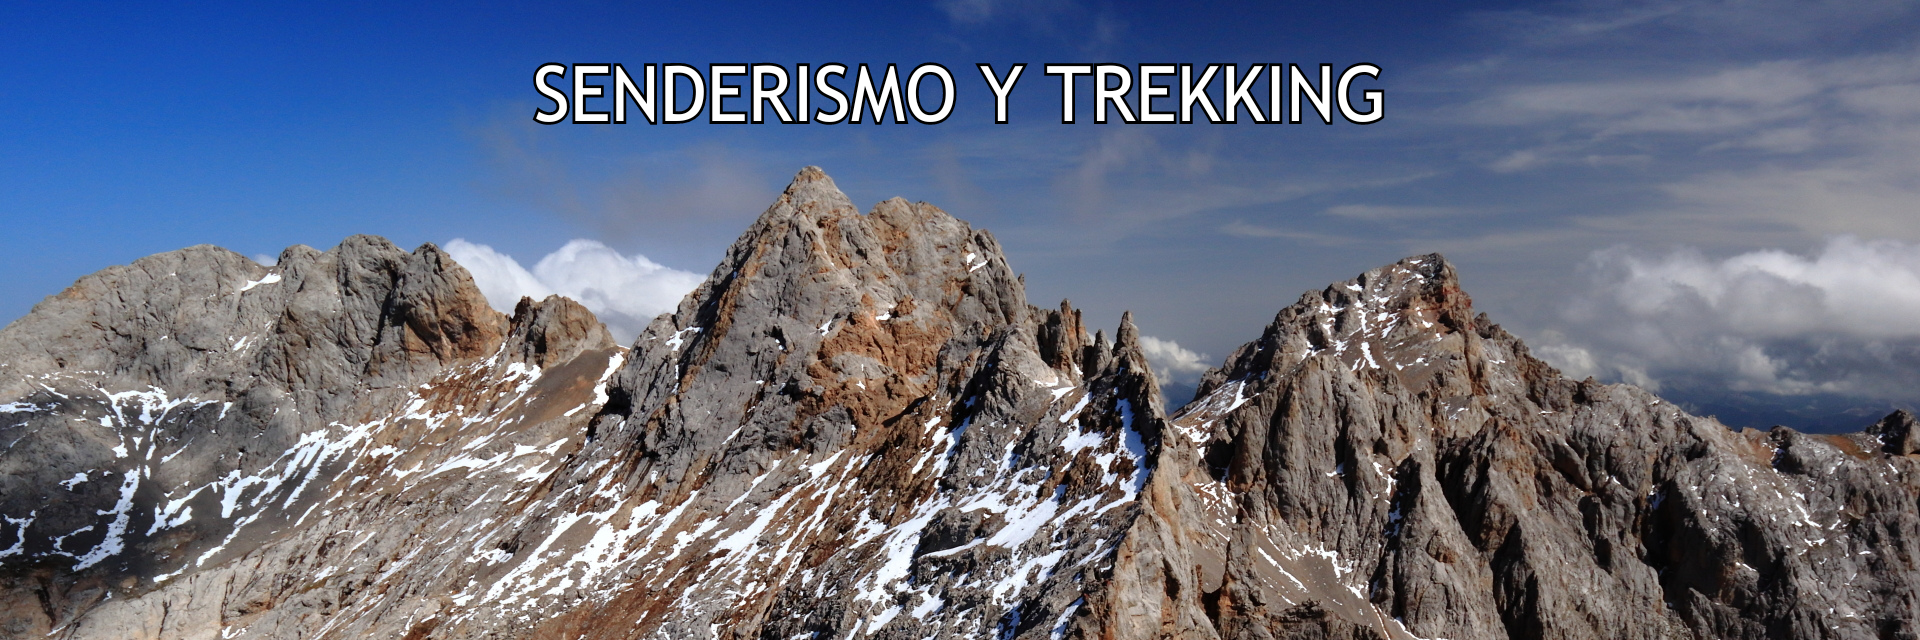 Cumbre realizada en actividad de senderismo y trekking en Picos de Europa, Liébana, Cantabria